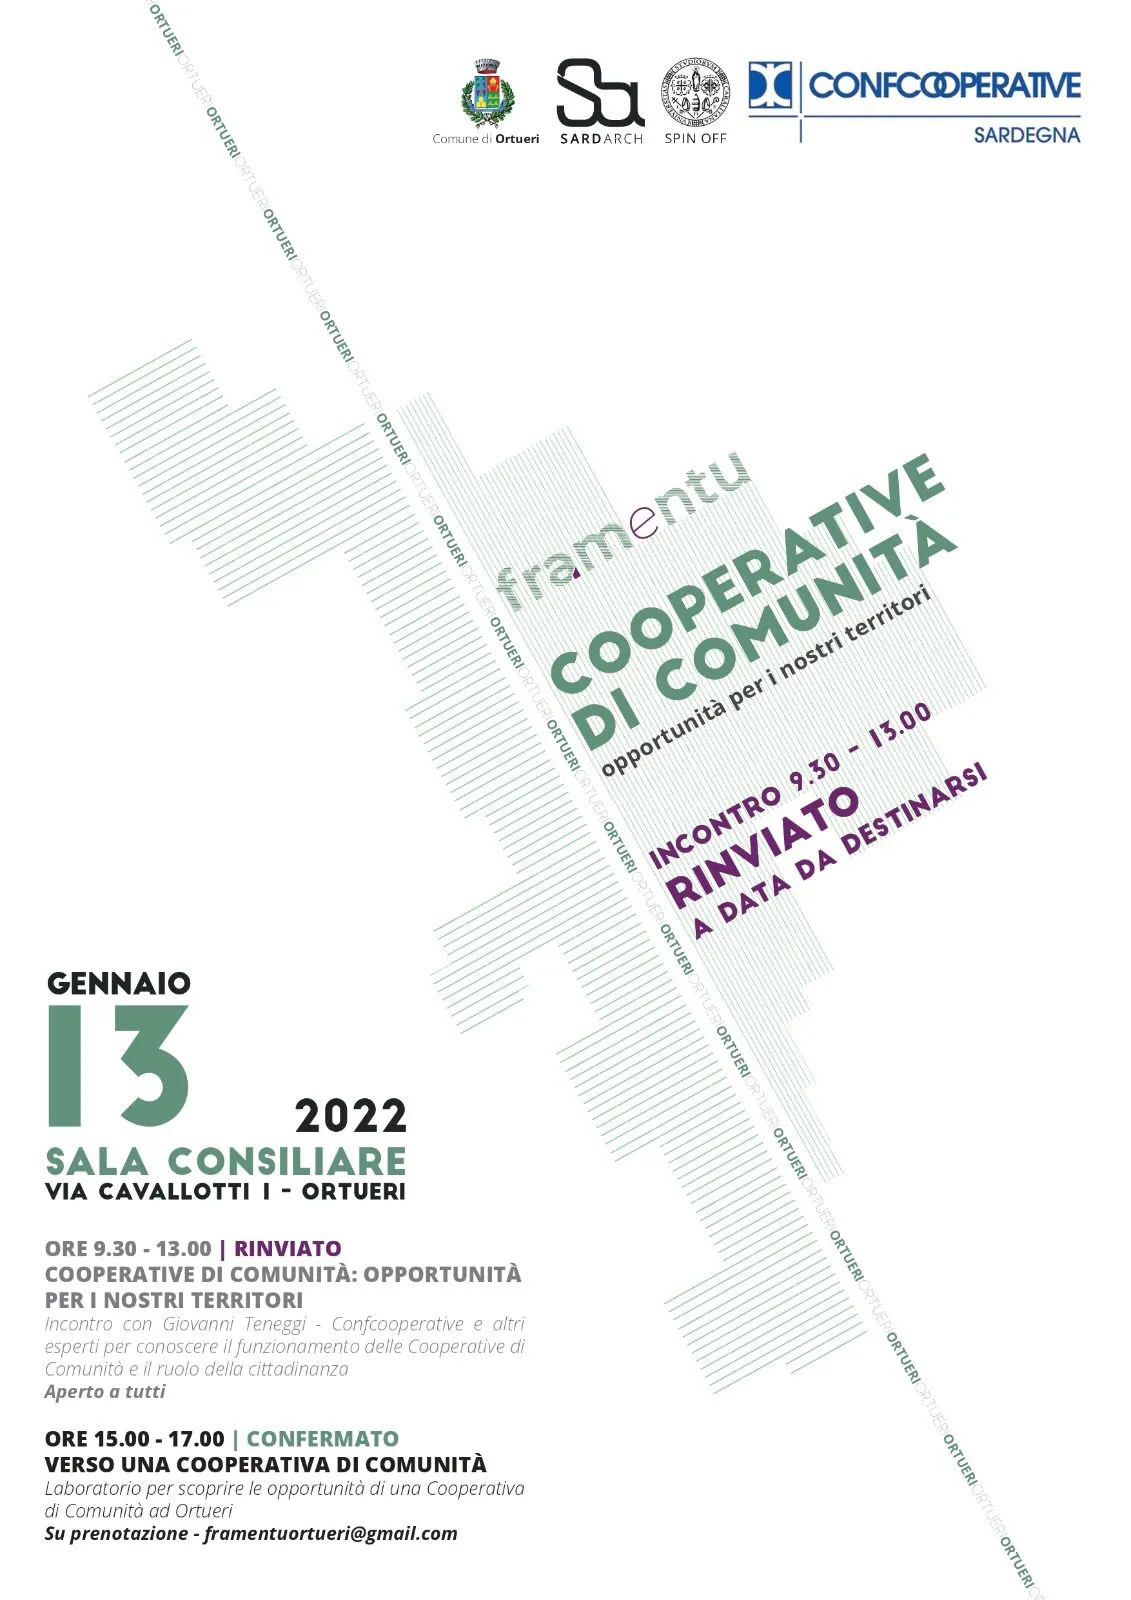 Aggiornamenti sull'evento del 13 gennaio sulle cooperative di comunità.